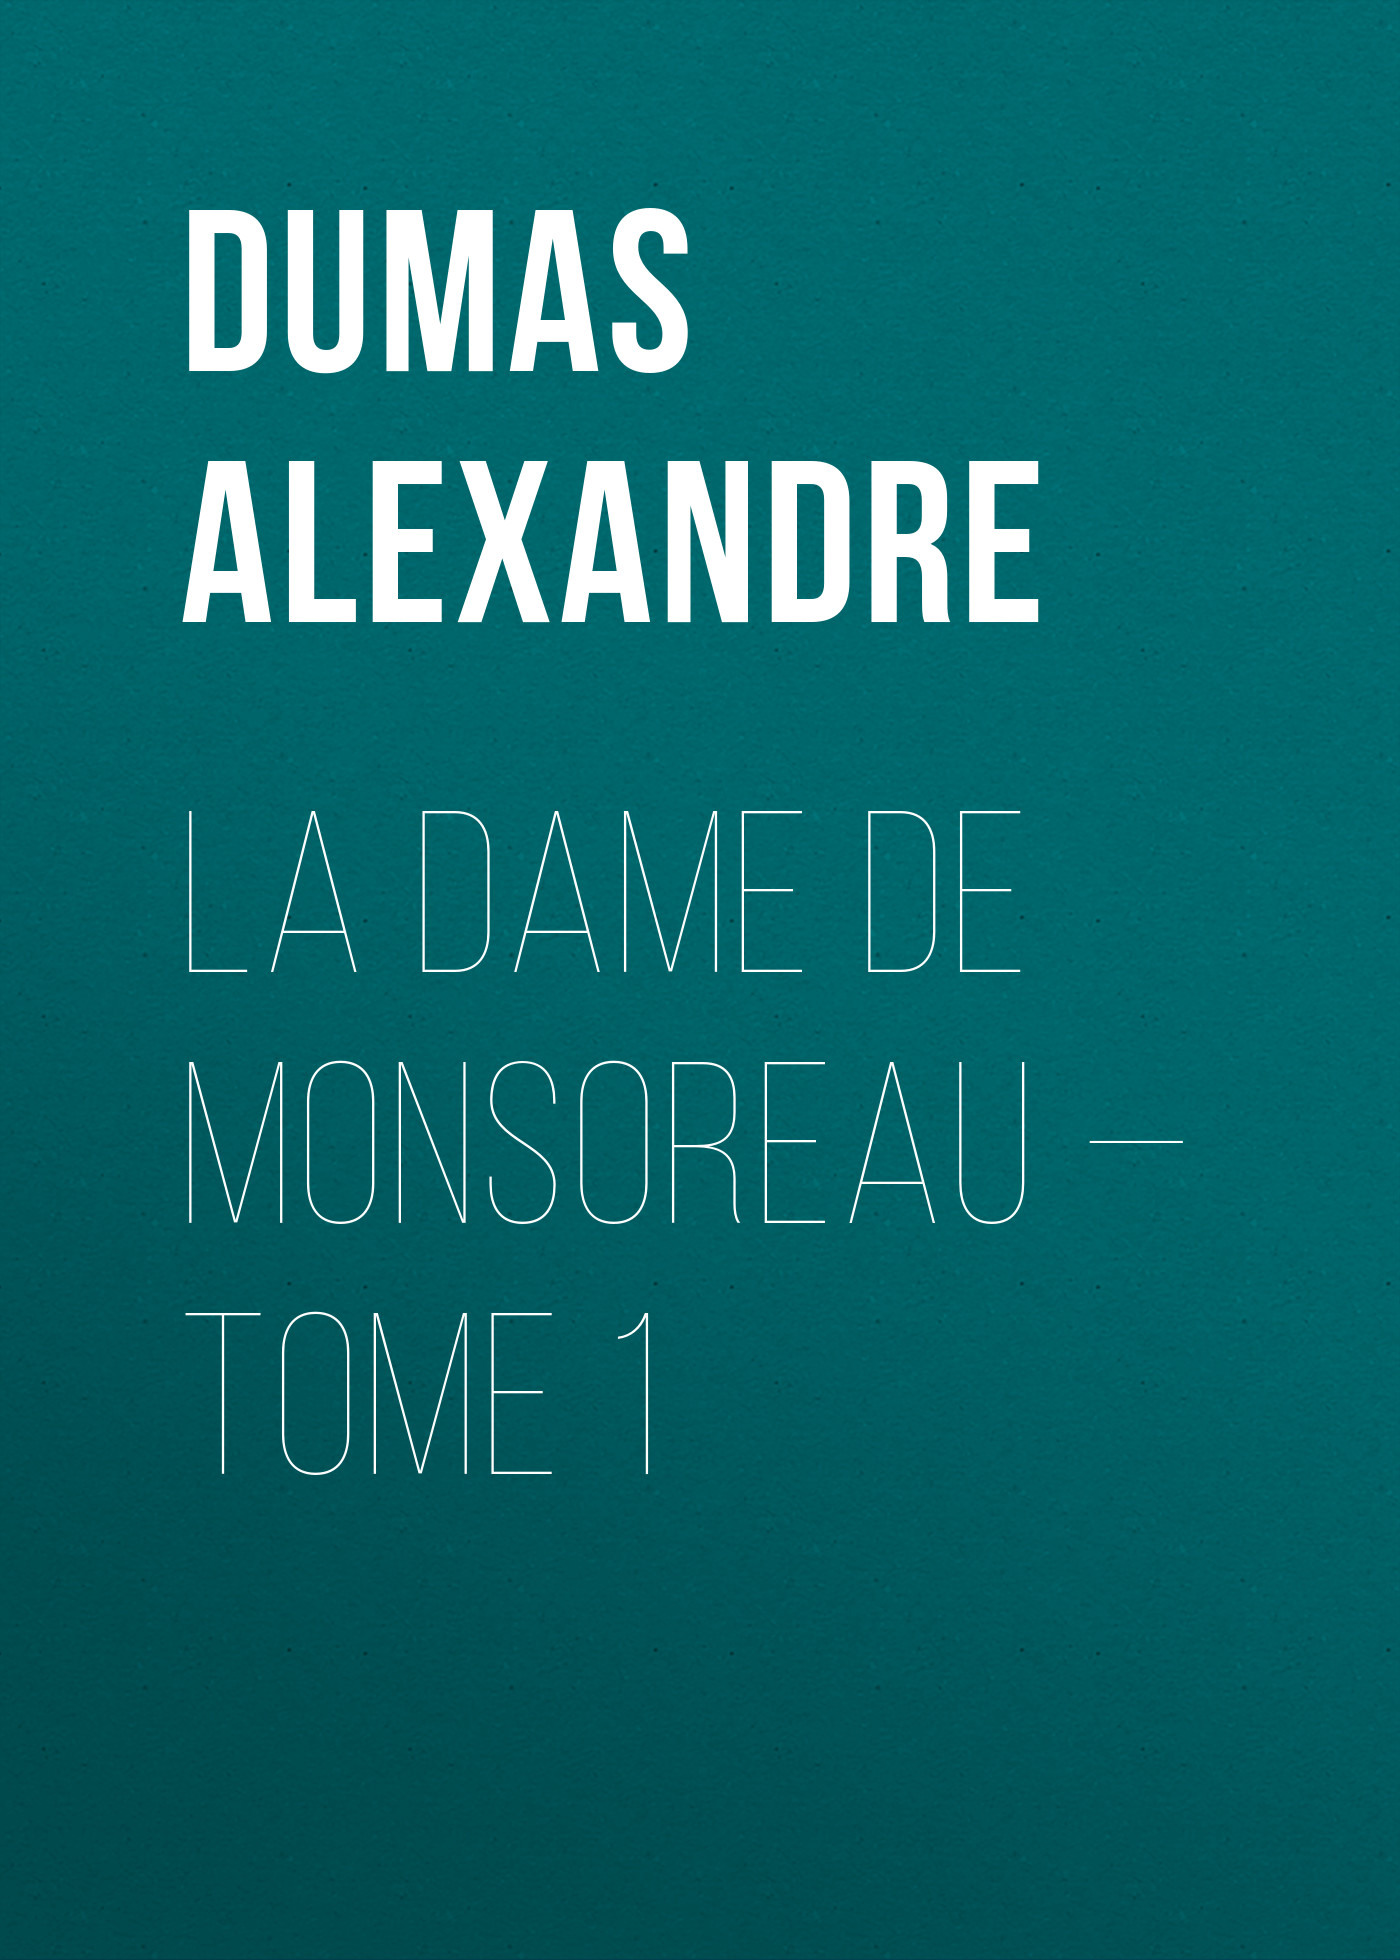 Книга La dame de Monsoreau – Tome 1 из серии , созданная Alexandre Dumas, может относится к жанру Литература 19 века, Зарубежная старинная литература, Зарубежная классика. Стоимость электронной книги La dame de Monsoreau – Tome 1 с идентификатором 25201759 составляет 0 руб.